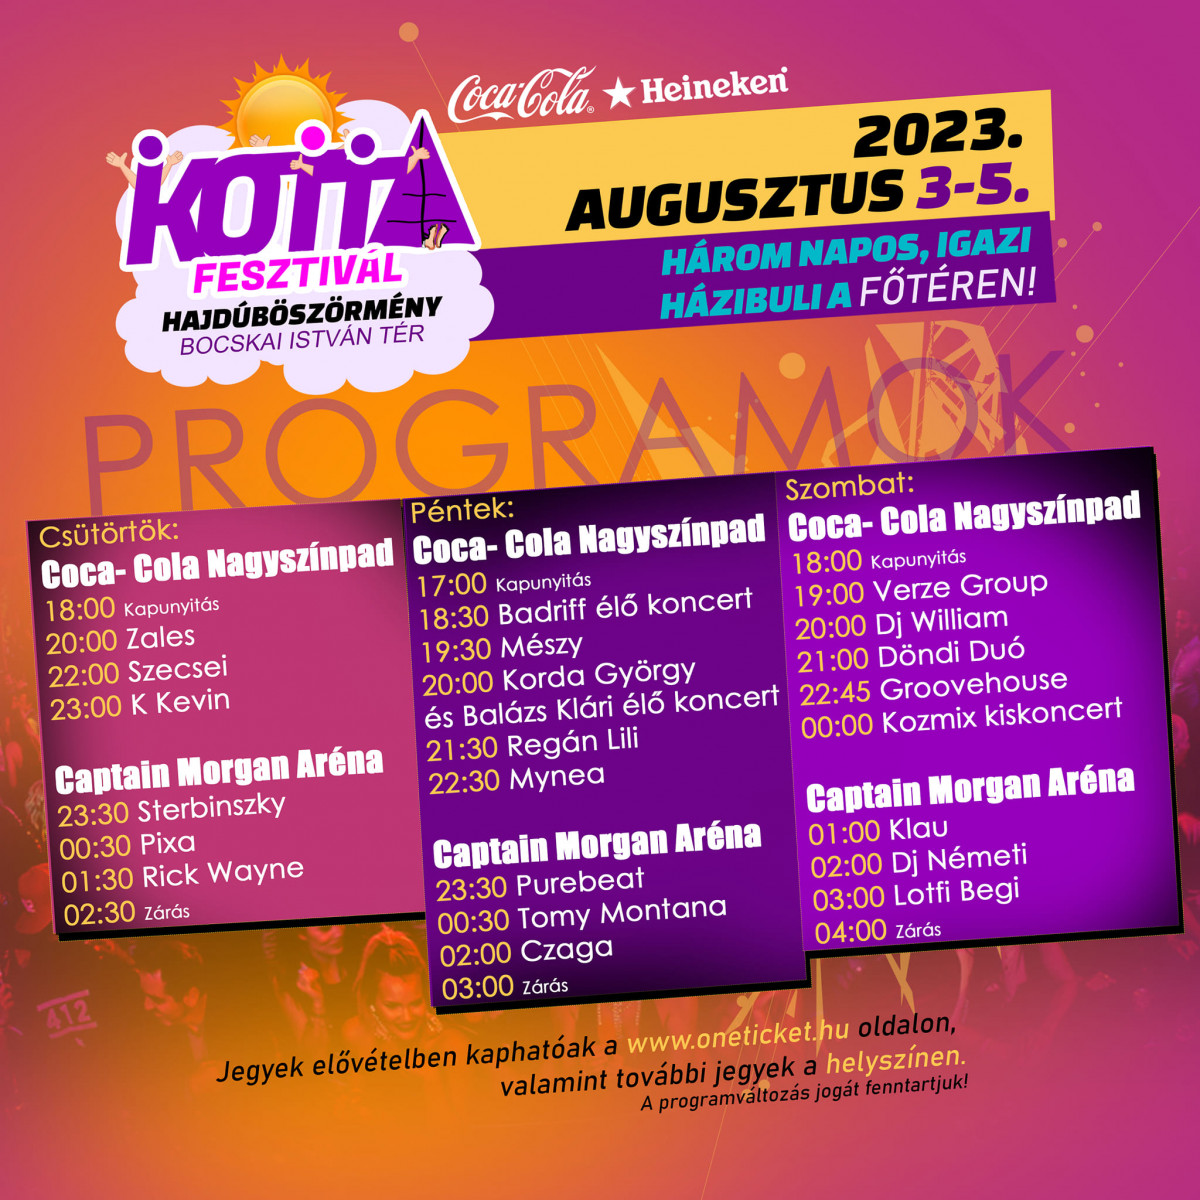 Kotta fesztivál 2023 program